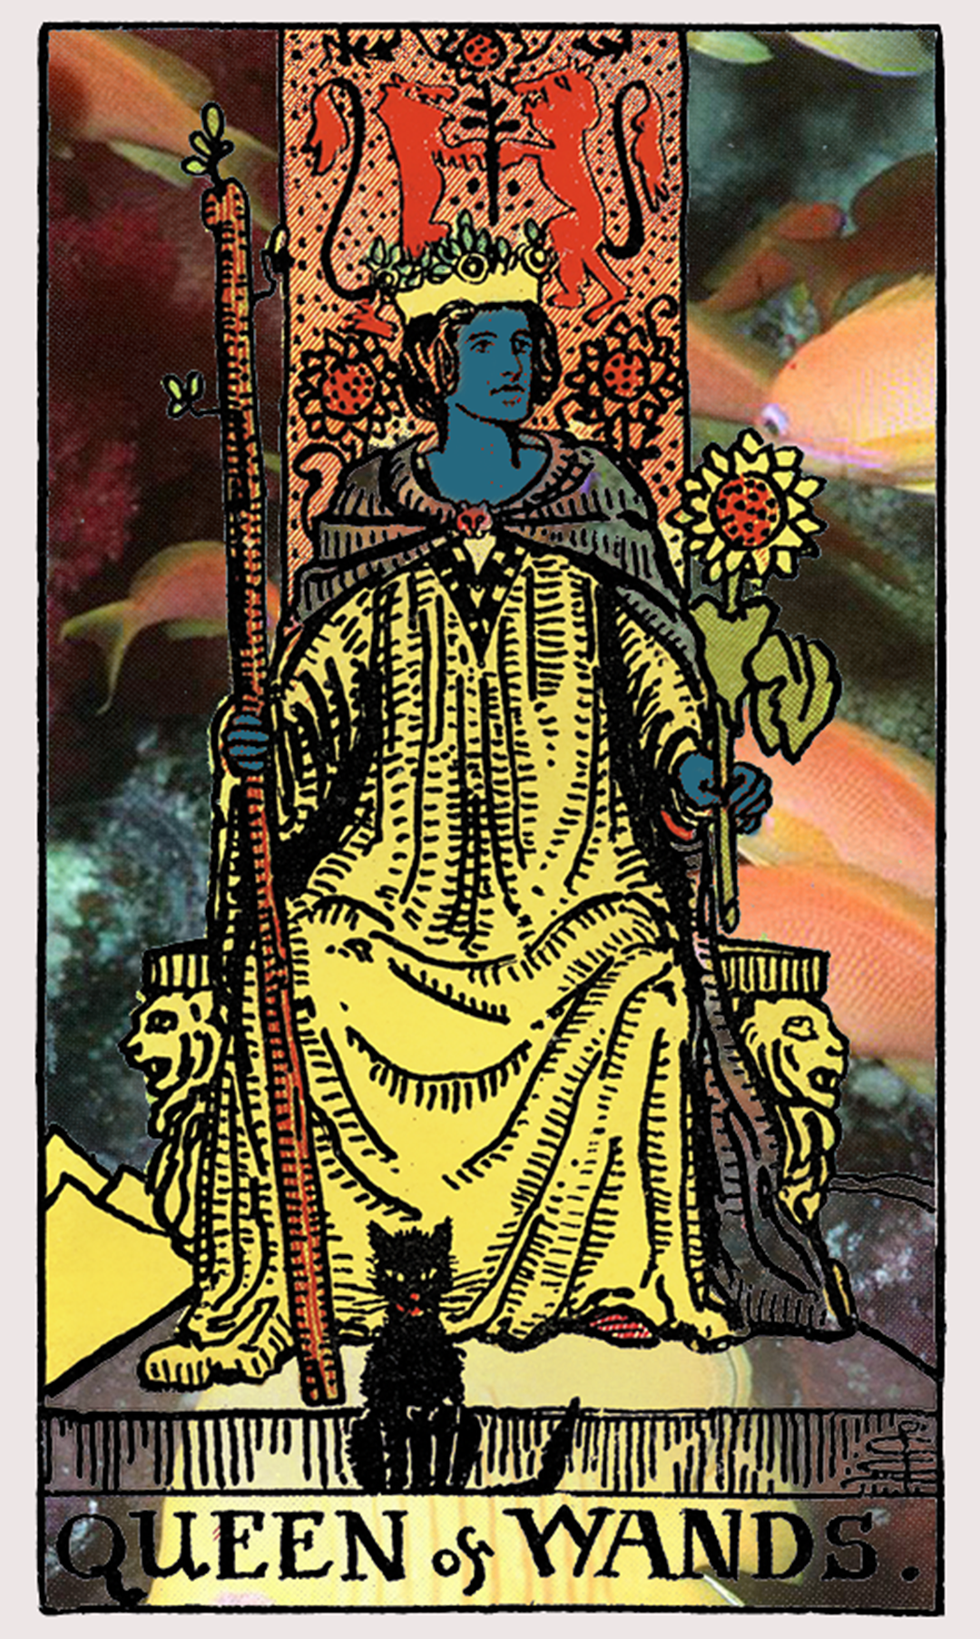 queen of wands tarot card